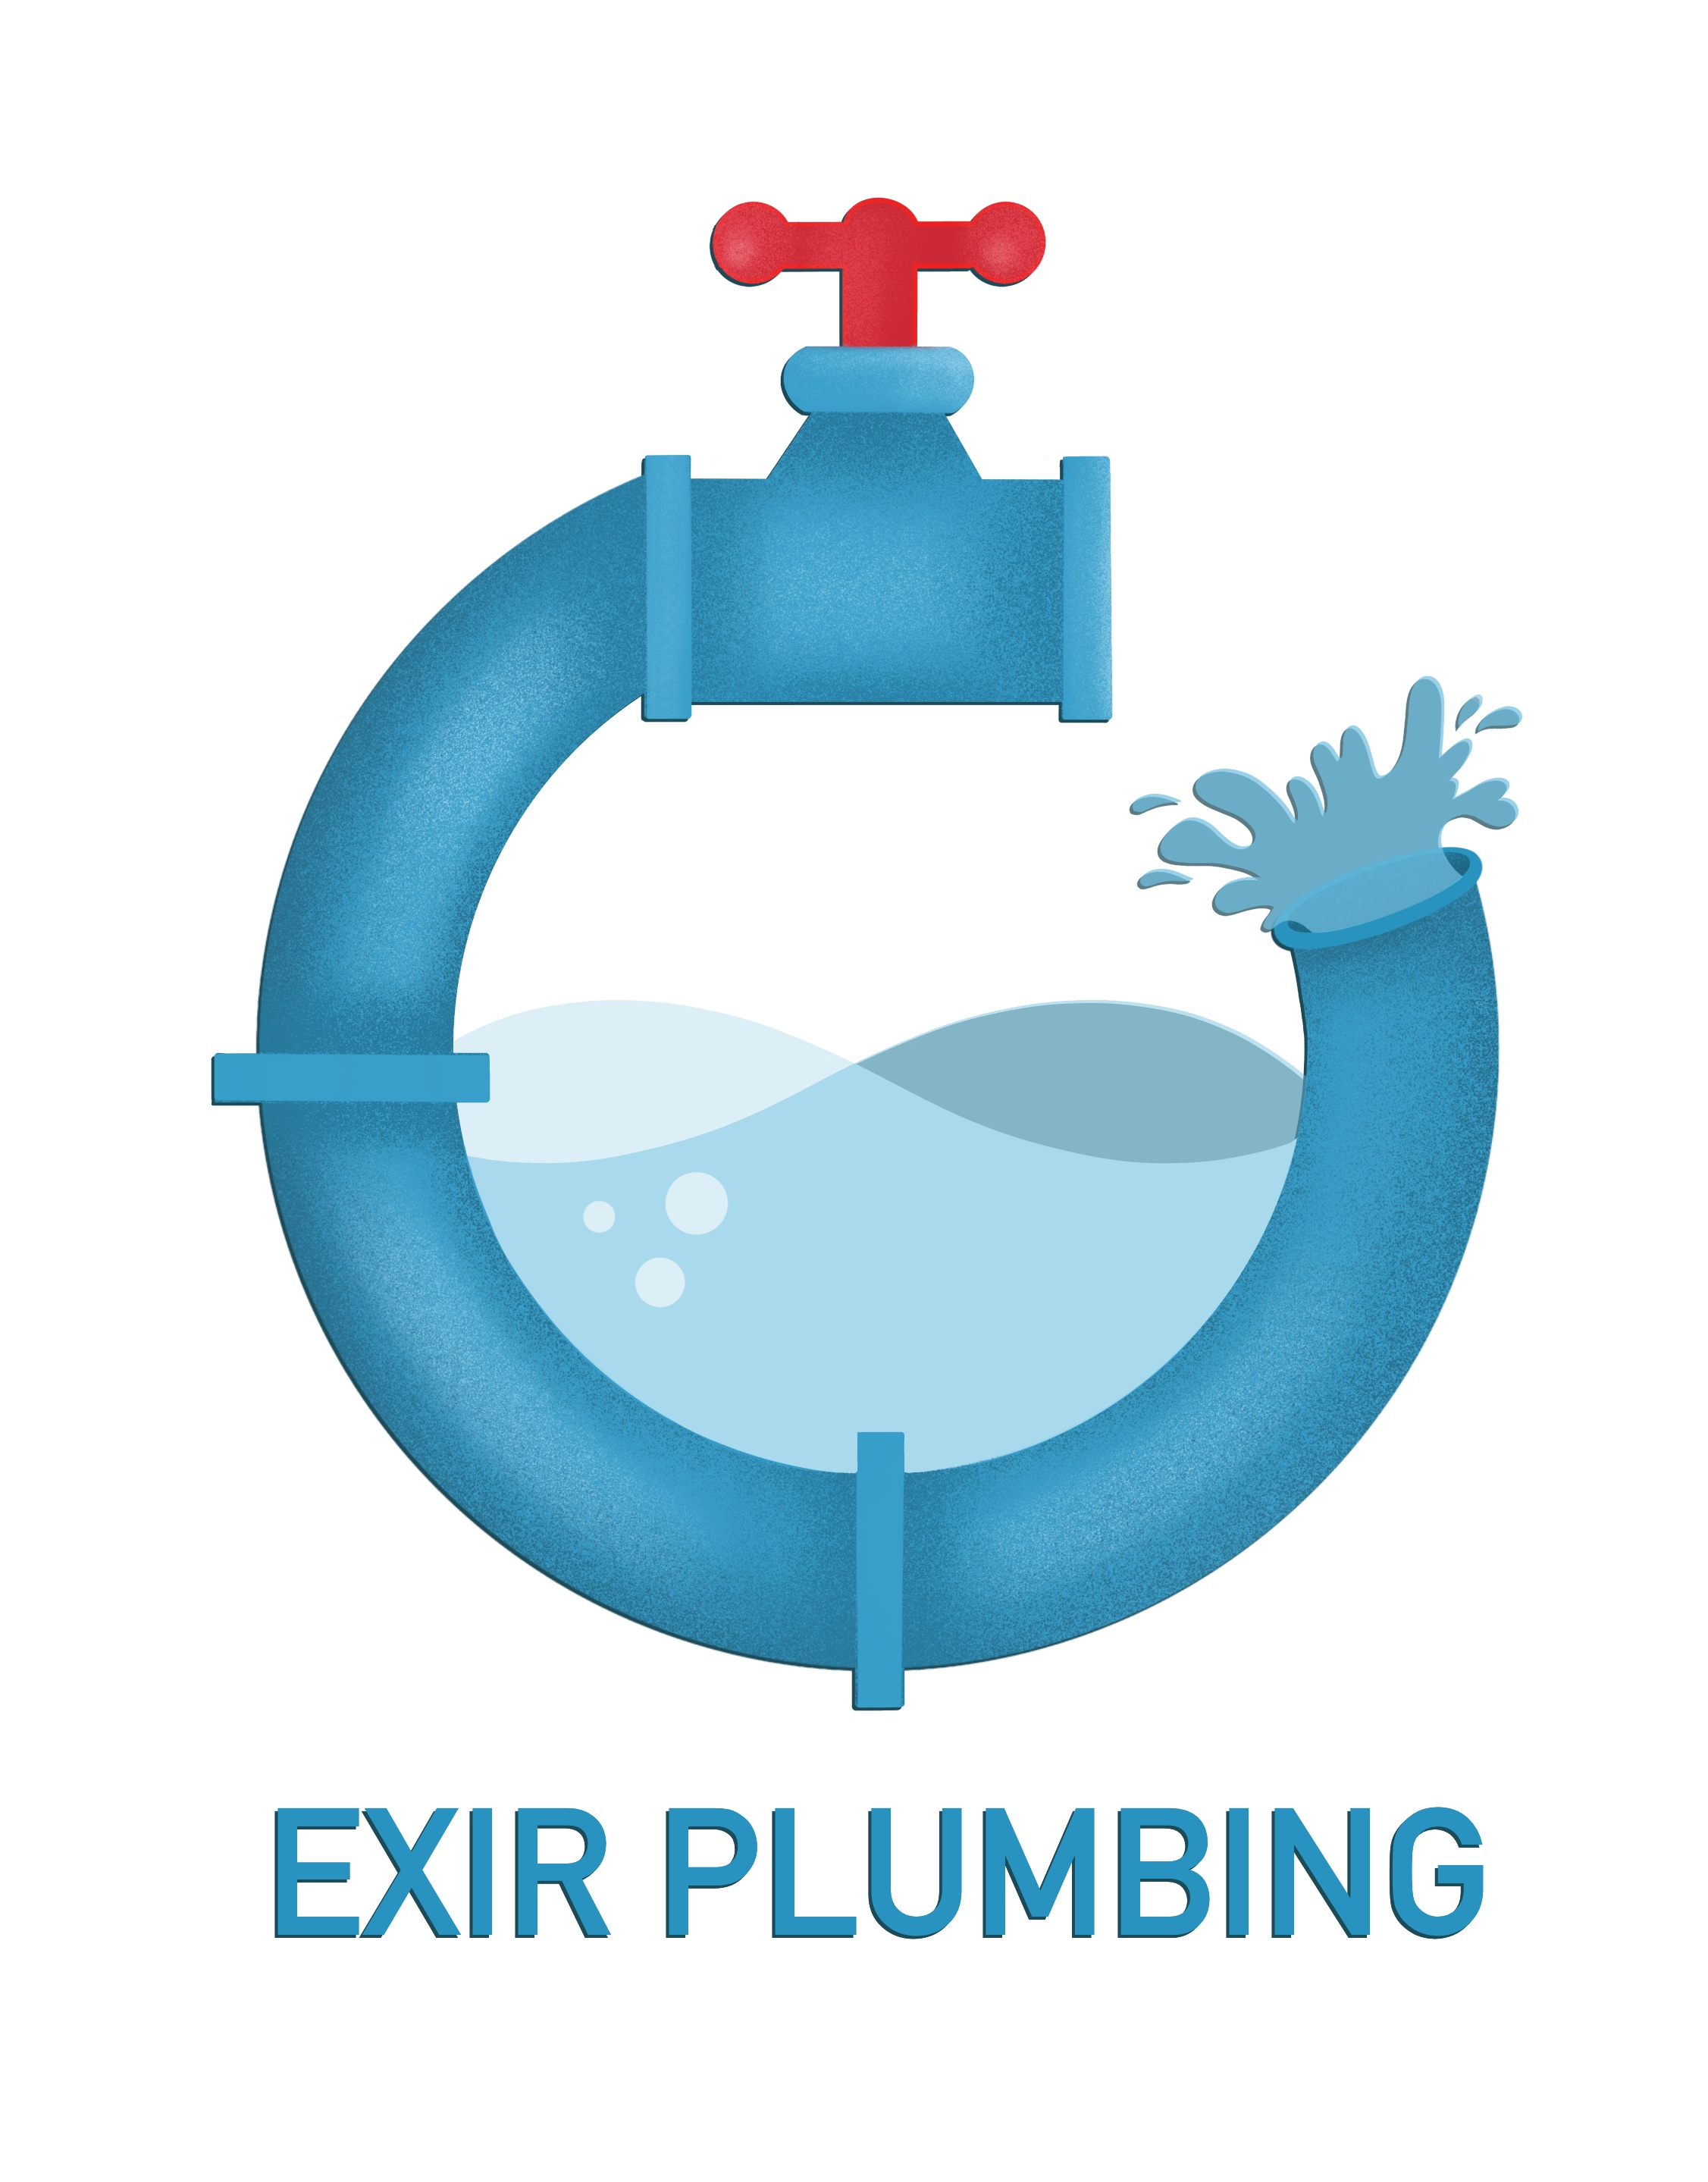 Exir plumbing's logo